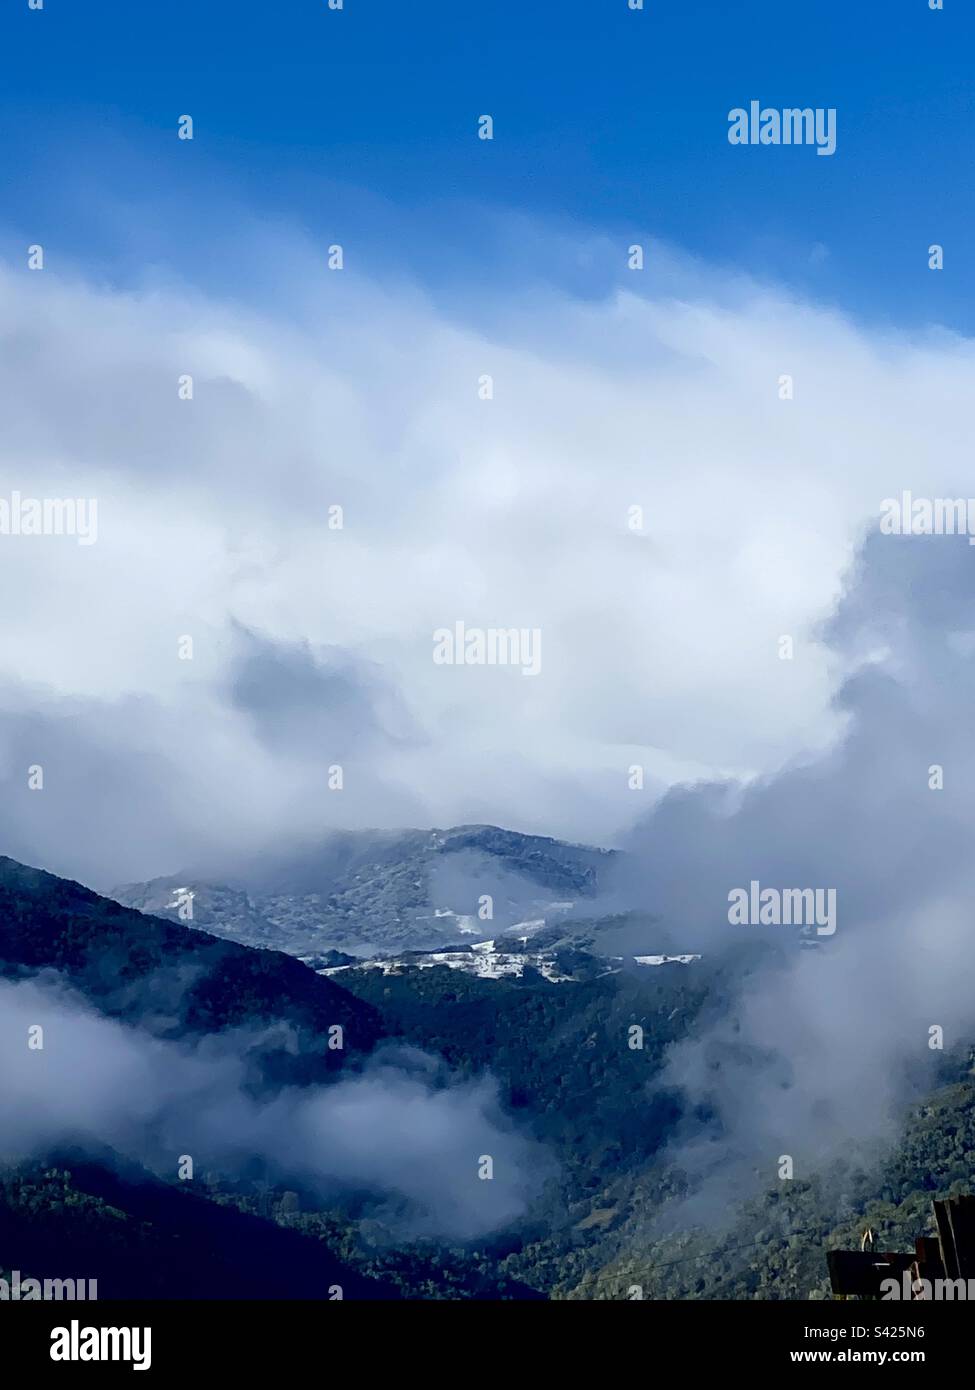 Carmel Valley nach einem frischen Schneefall im Februar – Monterey County, Kalifornien Stockfoto